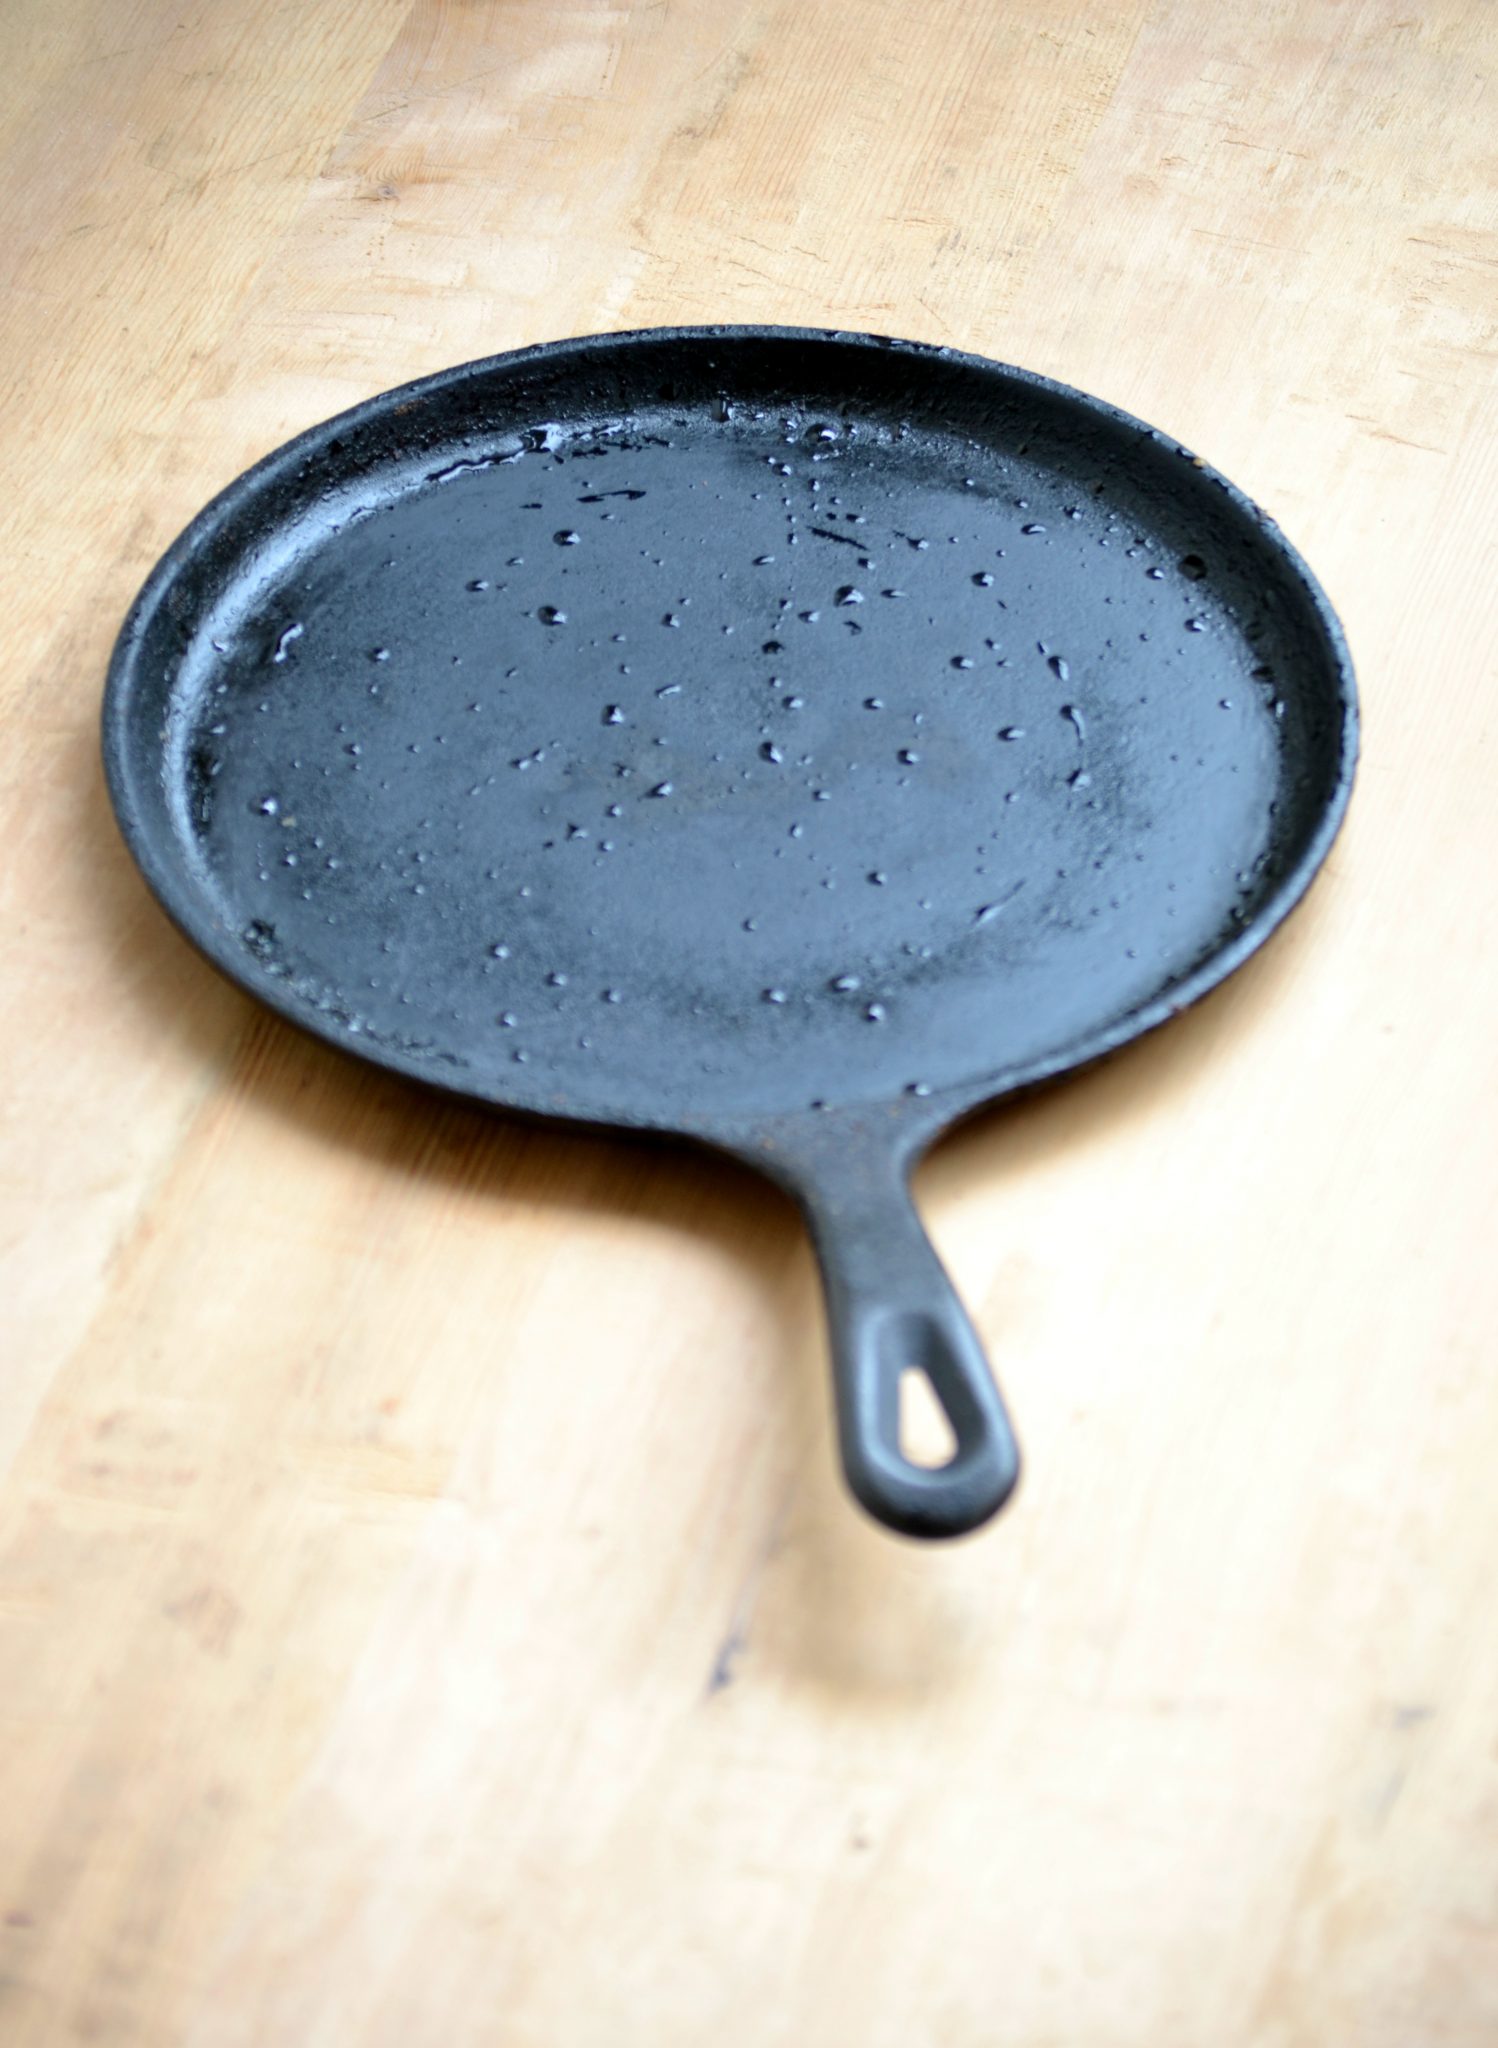 How to season your iron dosa pan